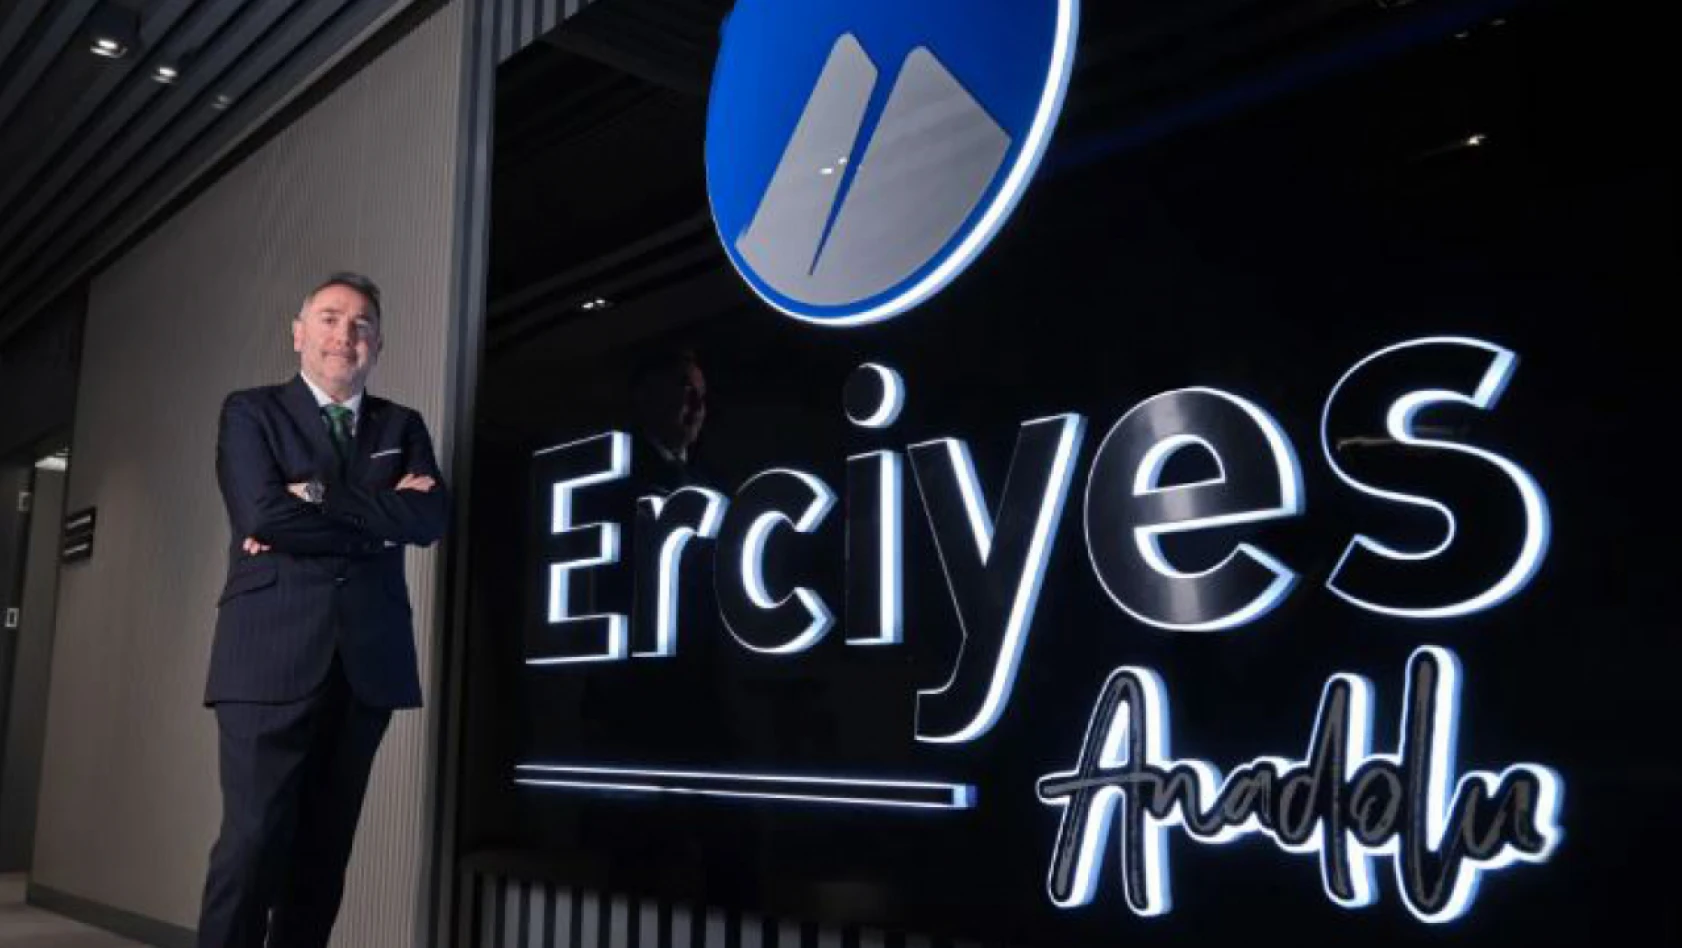 Erciyes Anadolu Holding'in Satışında Dikkat Çeken Gelişme!